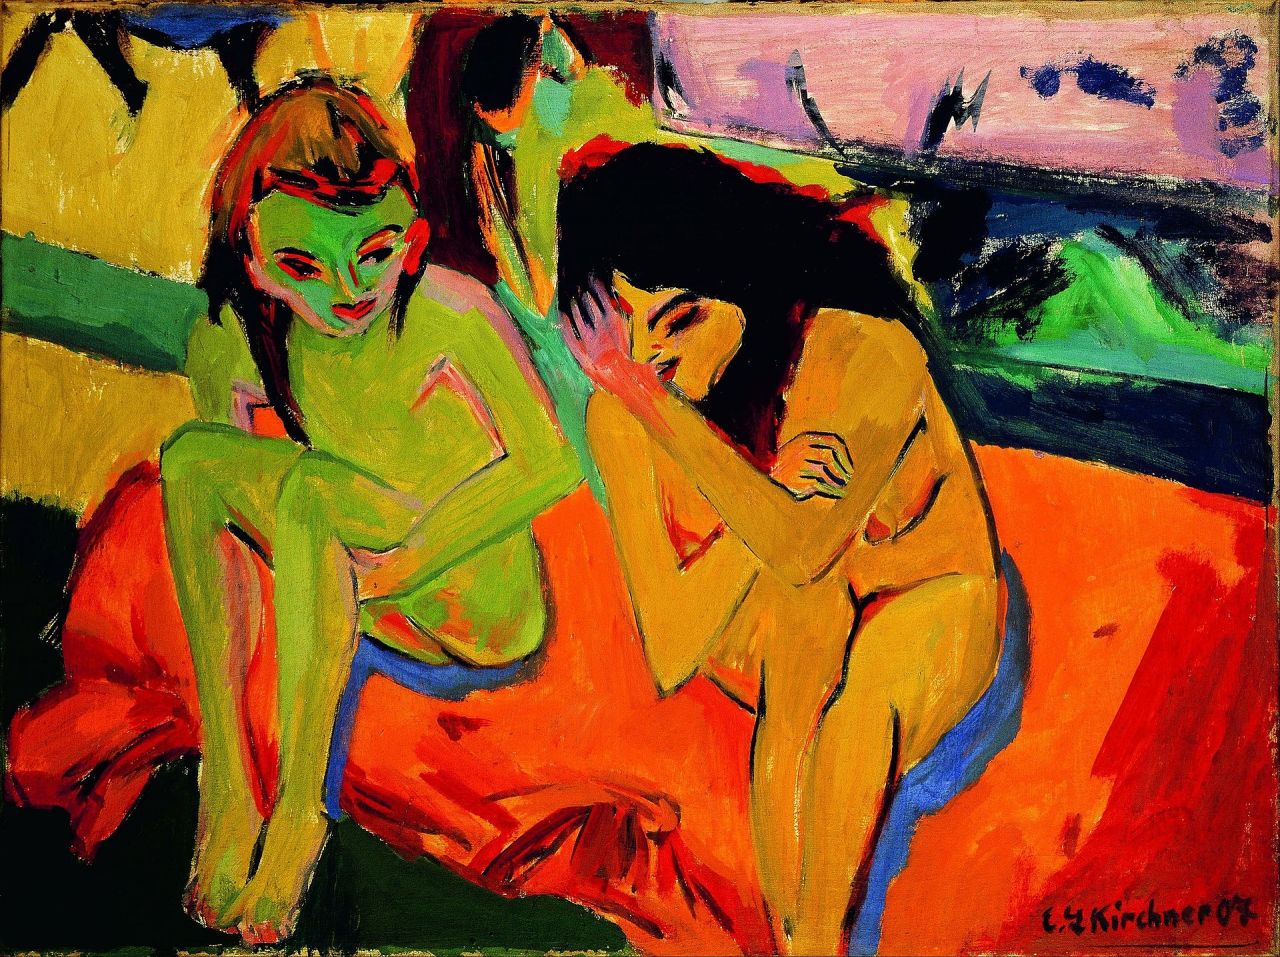 Kirchner - Nackte Mädchen unterhalten sich (Quelle: Von vwHmPUT-8l8WIQ at Google Cultural Institute maximum zoom level, Gemeinfrei, https://commons.wikimedia.org/w/index.php?curid=21987871)